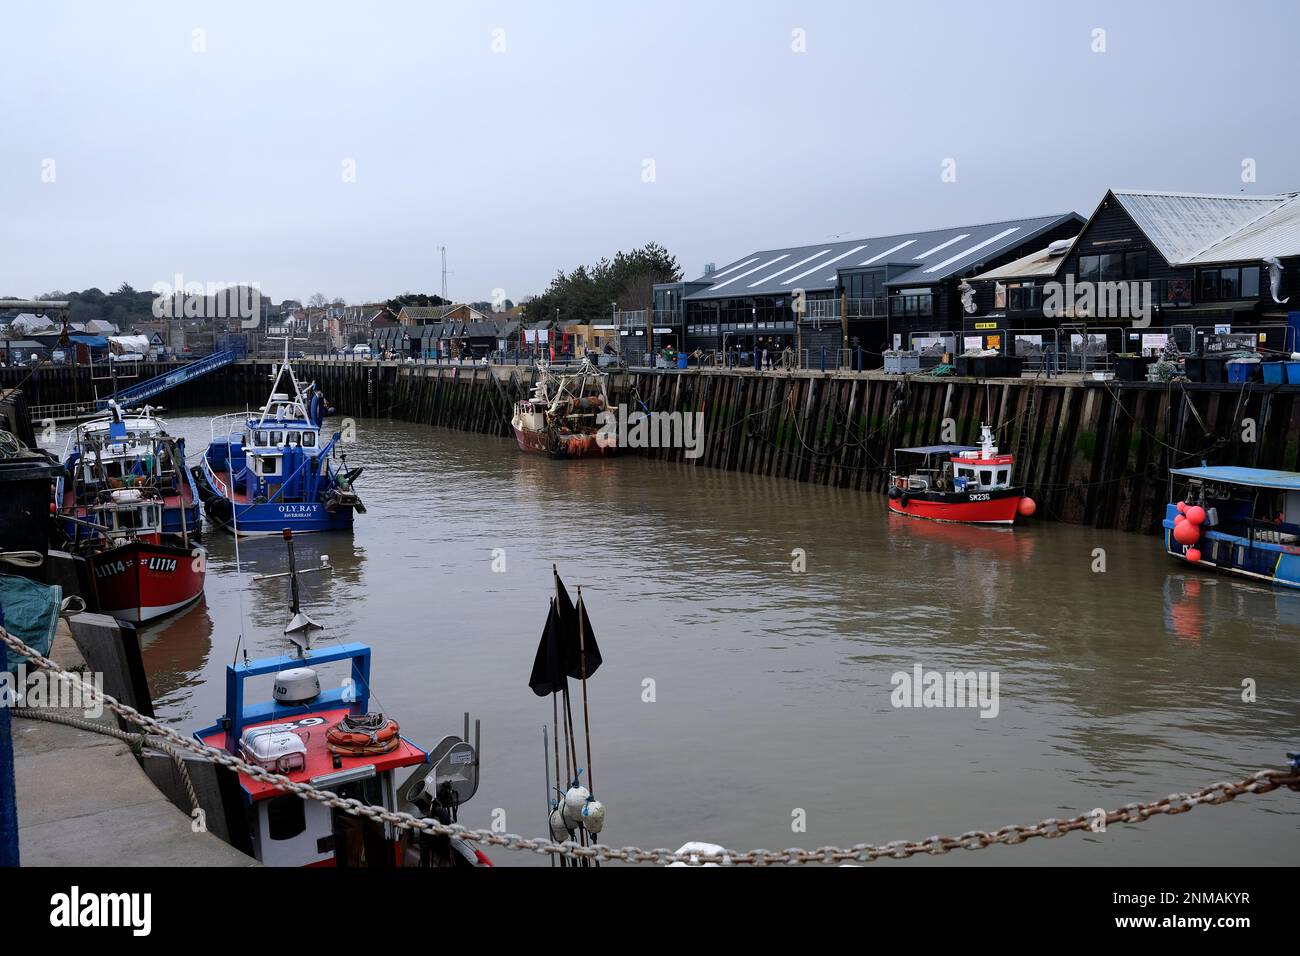 whitstable Town in East kent, zeigt Boote, die im Hafen festgemacht sind, uk februar 2023 Stockfoto